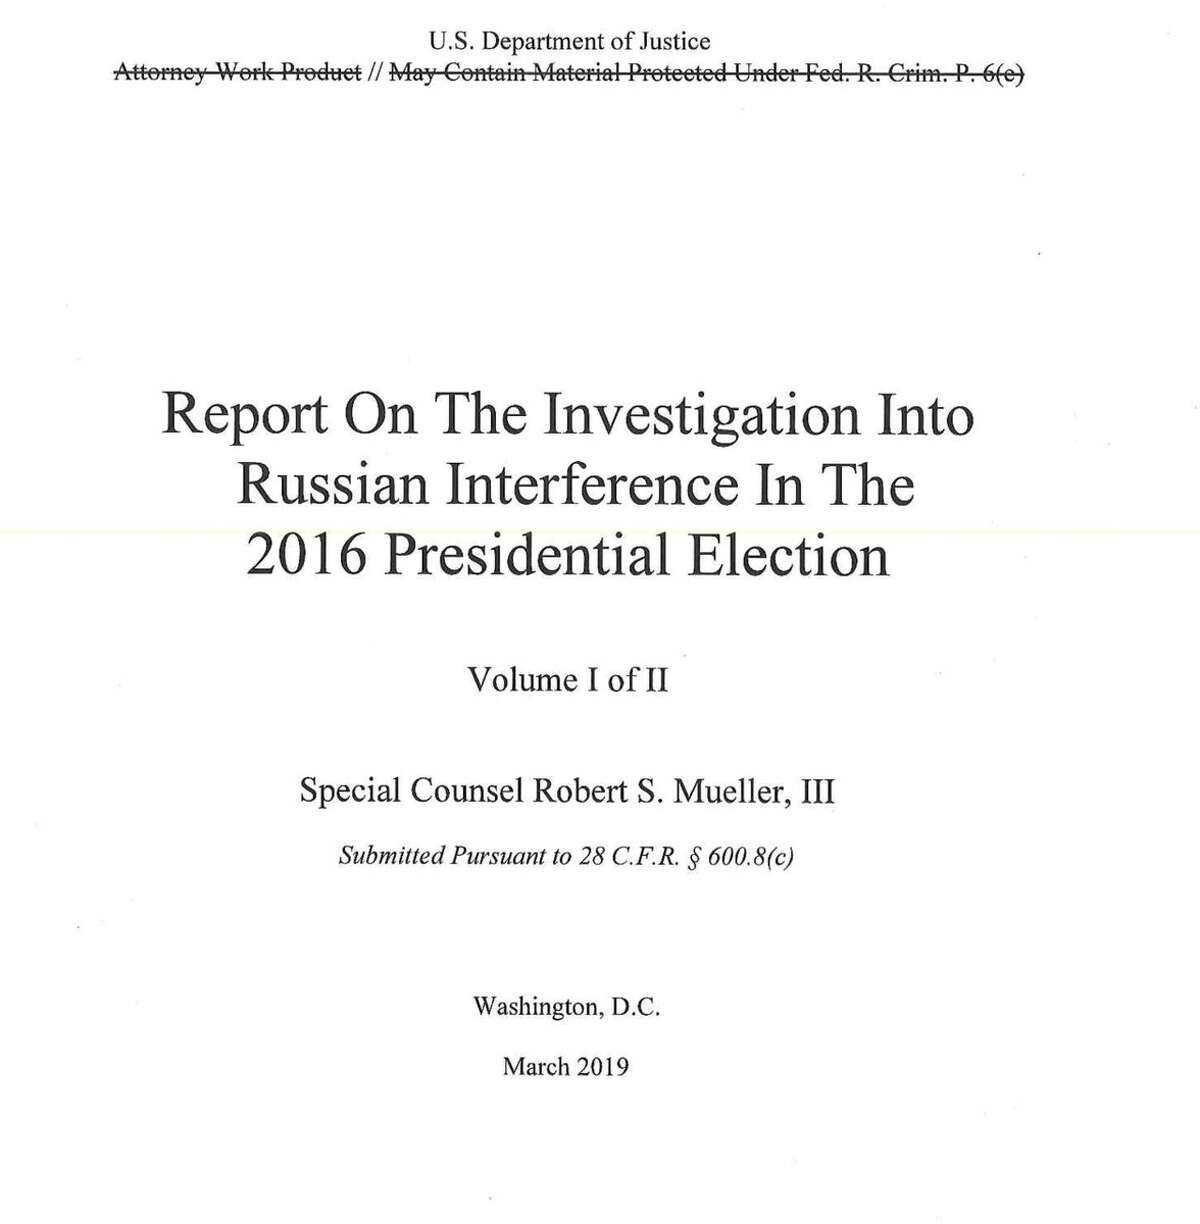 The redacted Mueller report has been released.